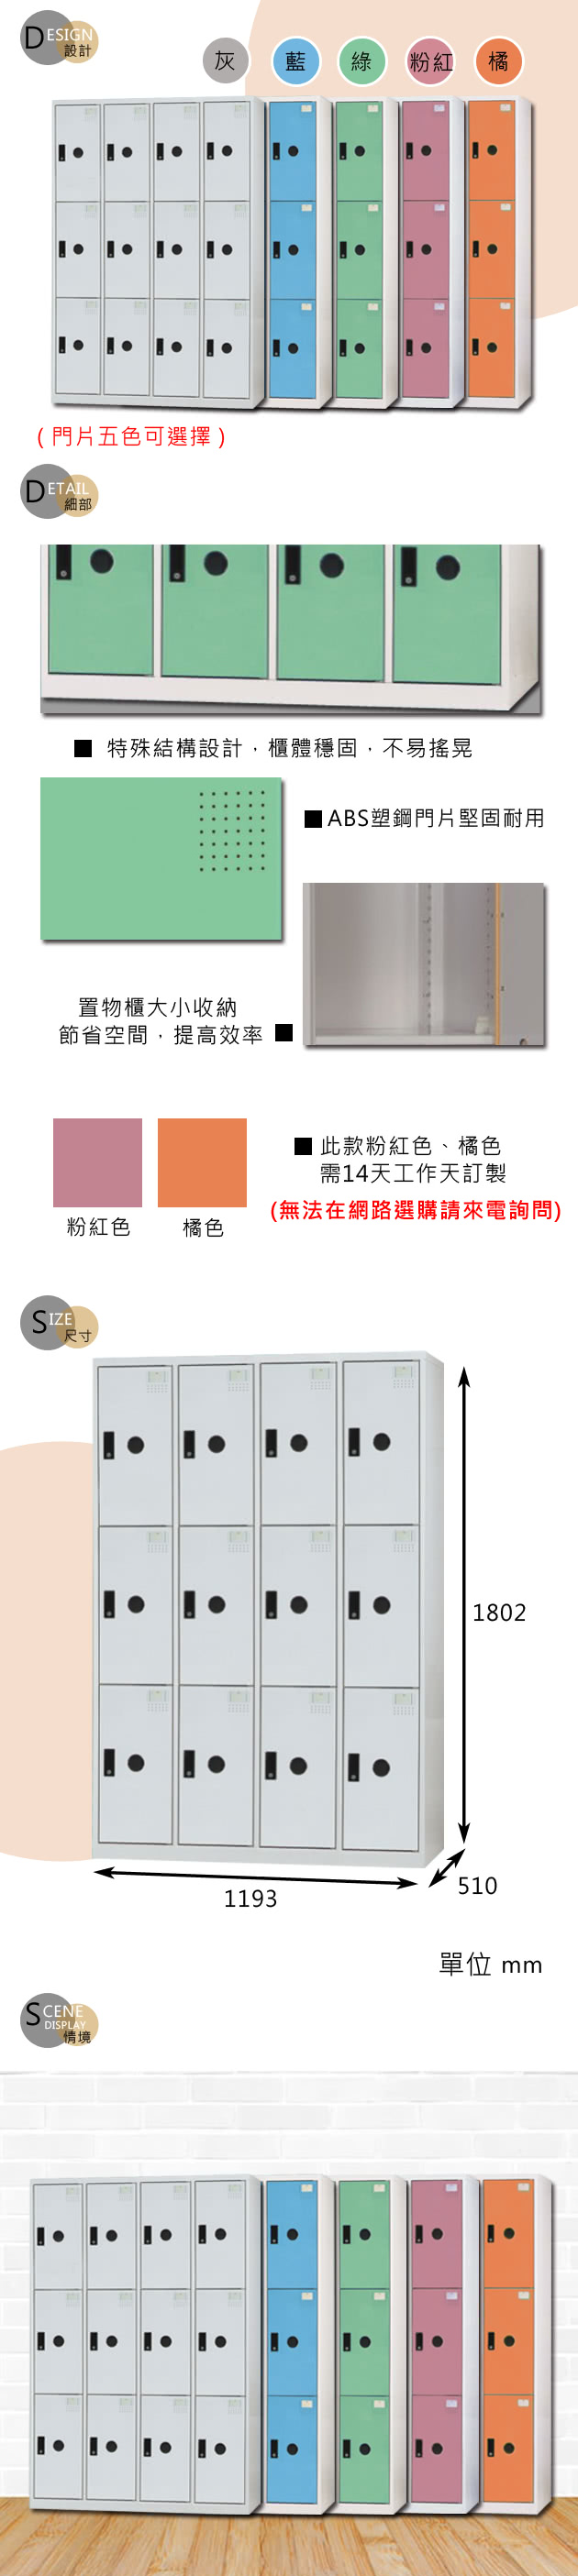 【時尚屋】克萊德多用途塑鋼製12格置物櫃 RU6-KL-E5512F三色可選-免運費(置物櫃)